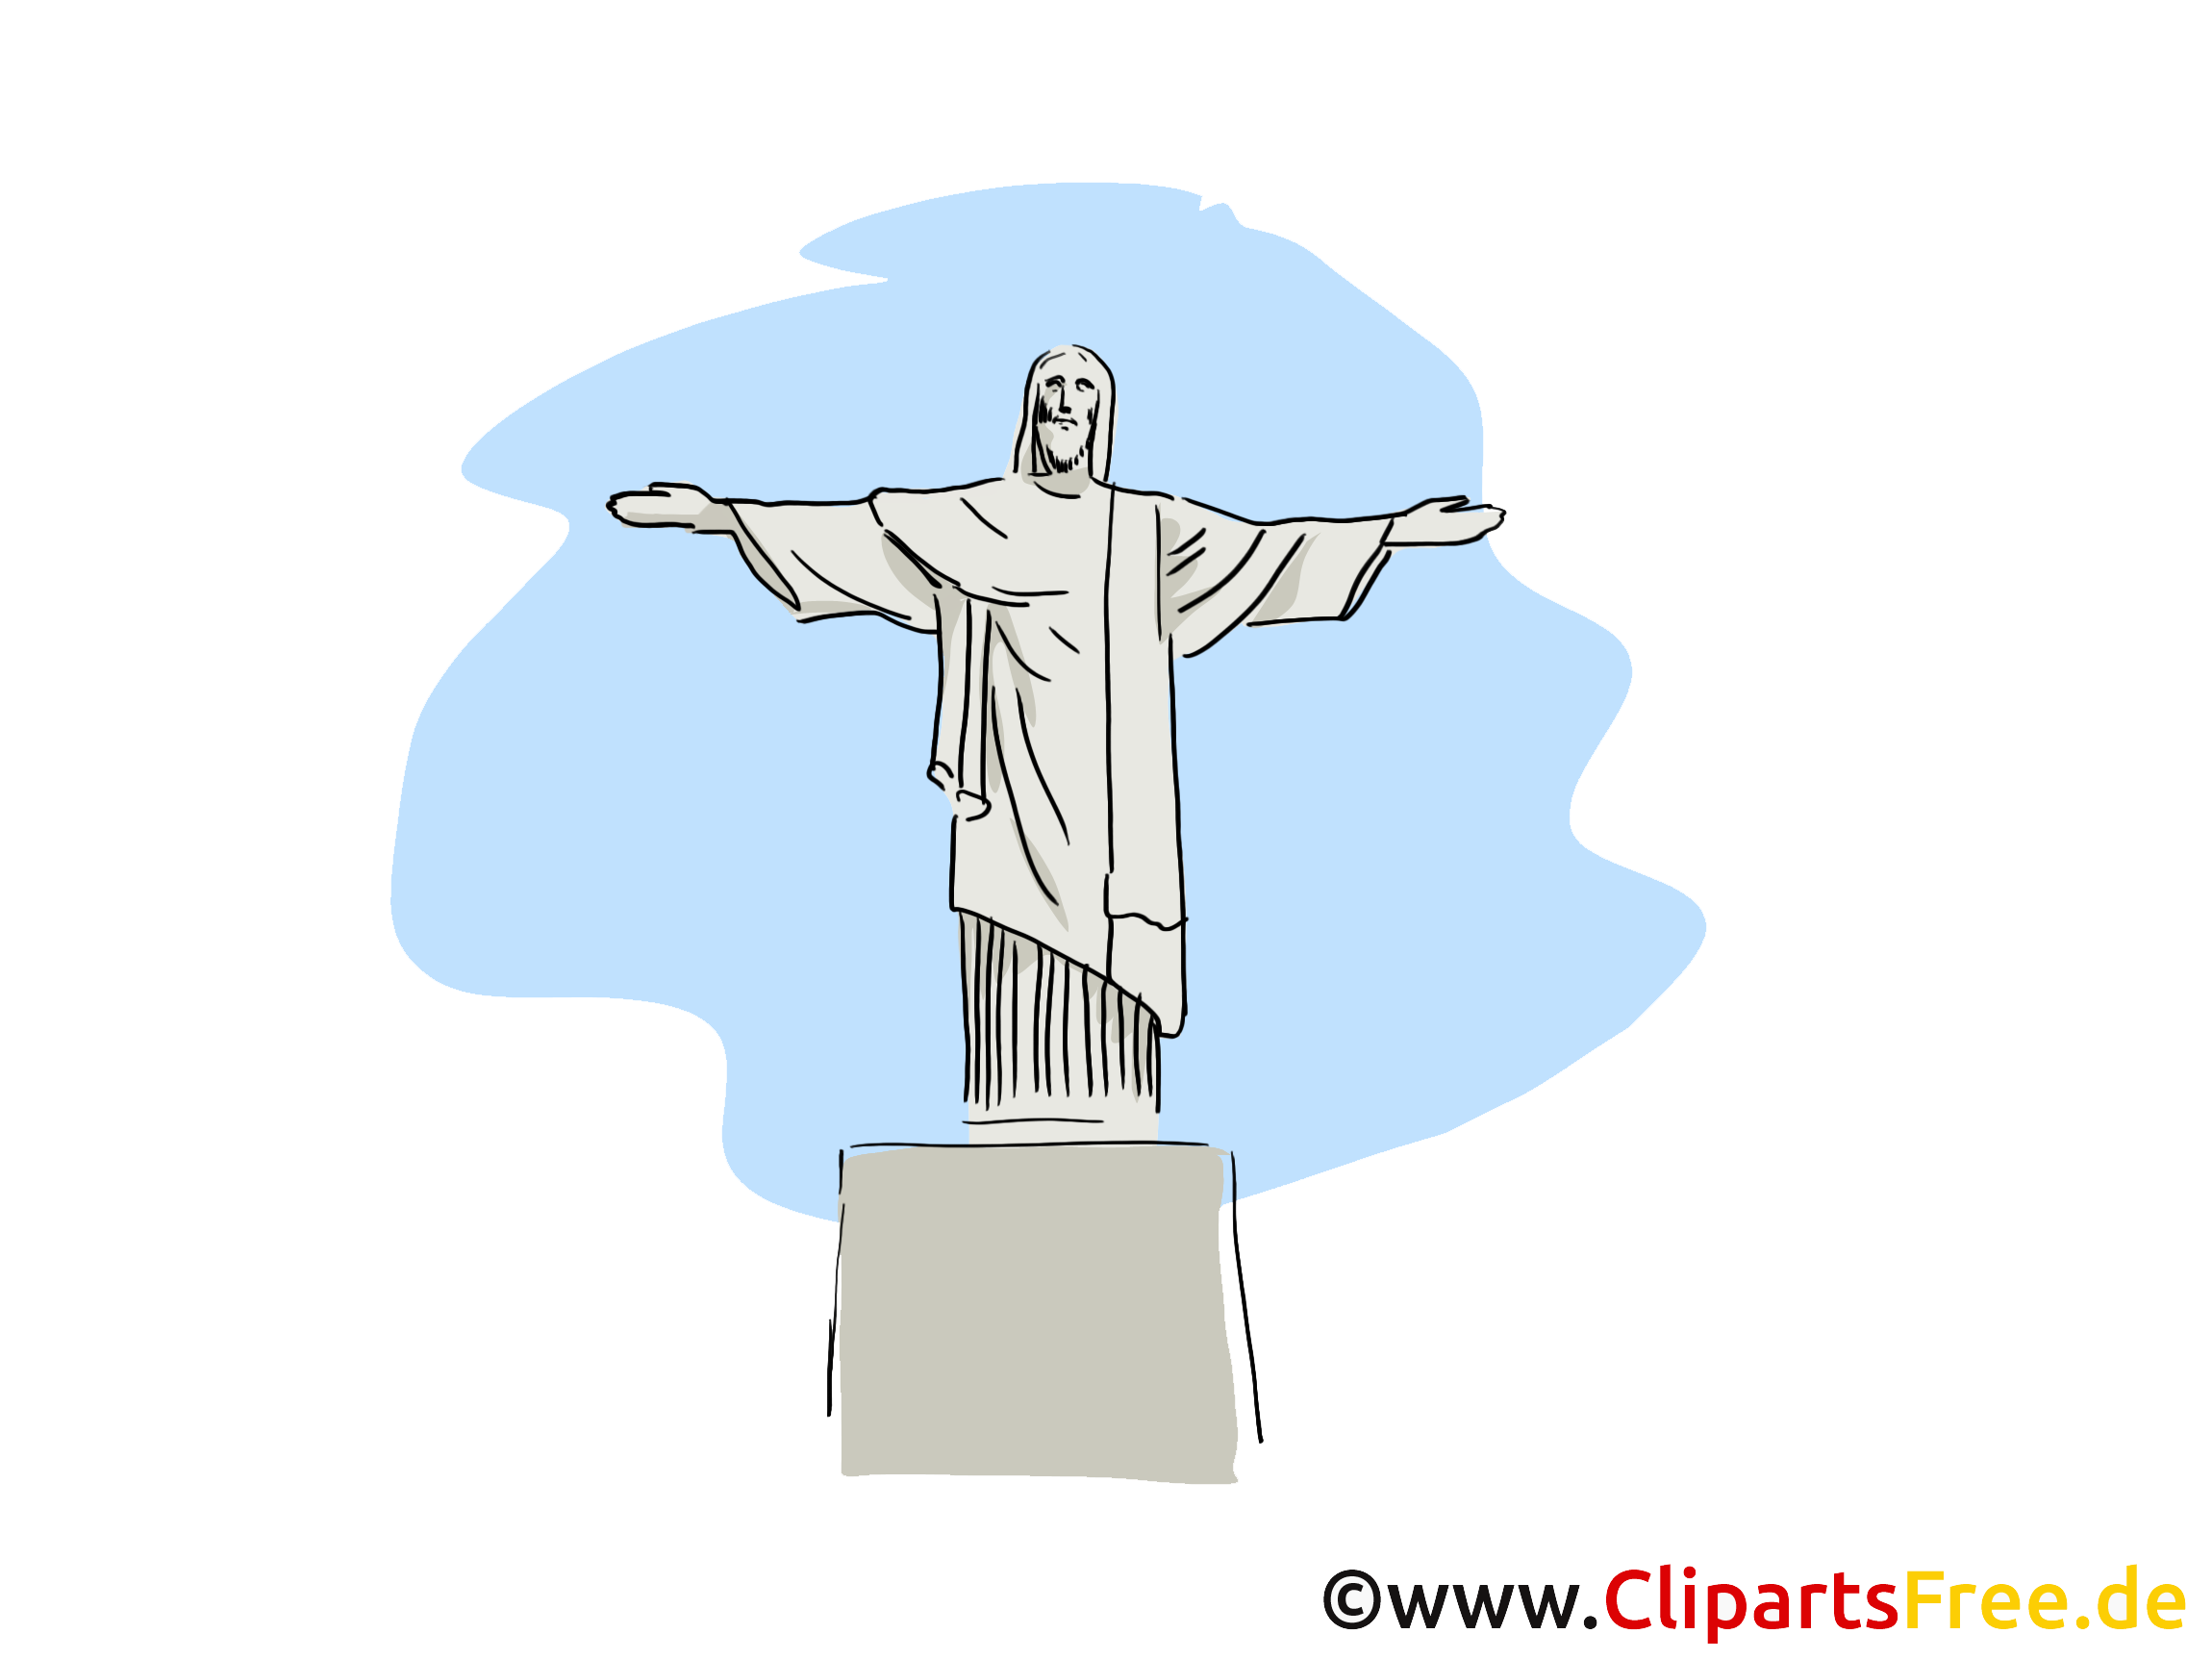 Rio de Janeiro illustration - Christ Rédempteur image